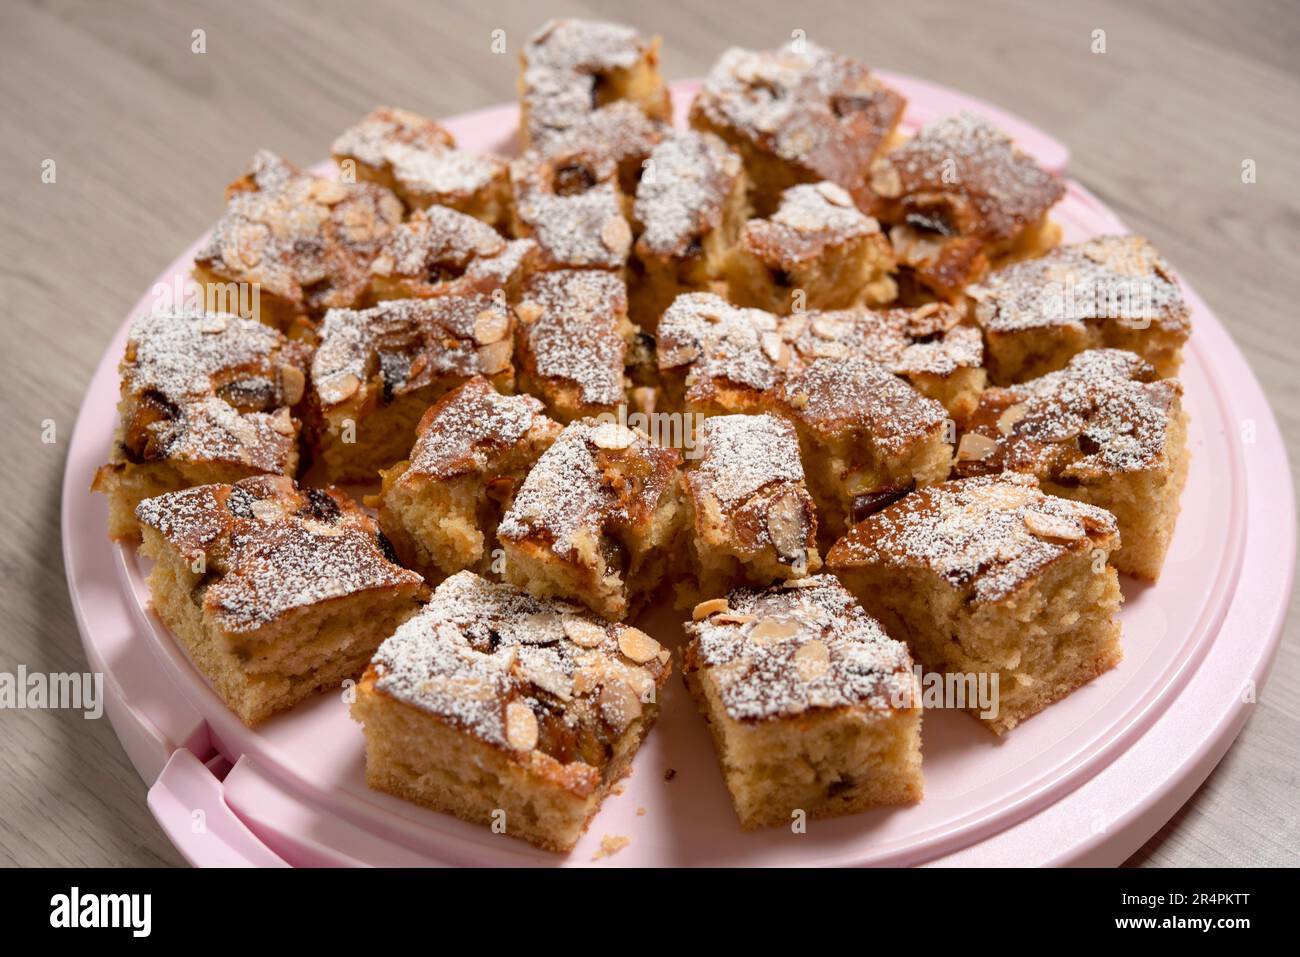 Hausgemachter Kuchen mit Mandelscheiben und Zuckerpulver - Makrofotografie Stockfoto